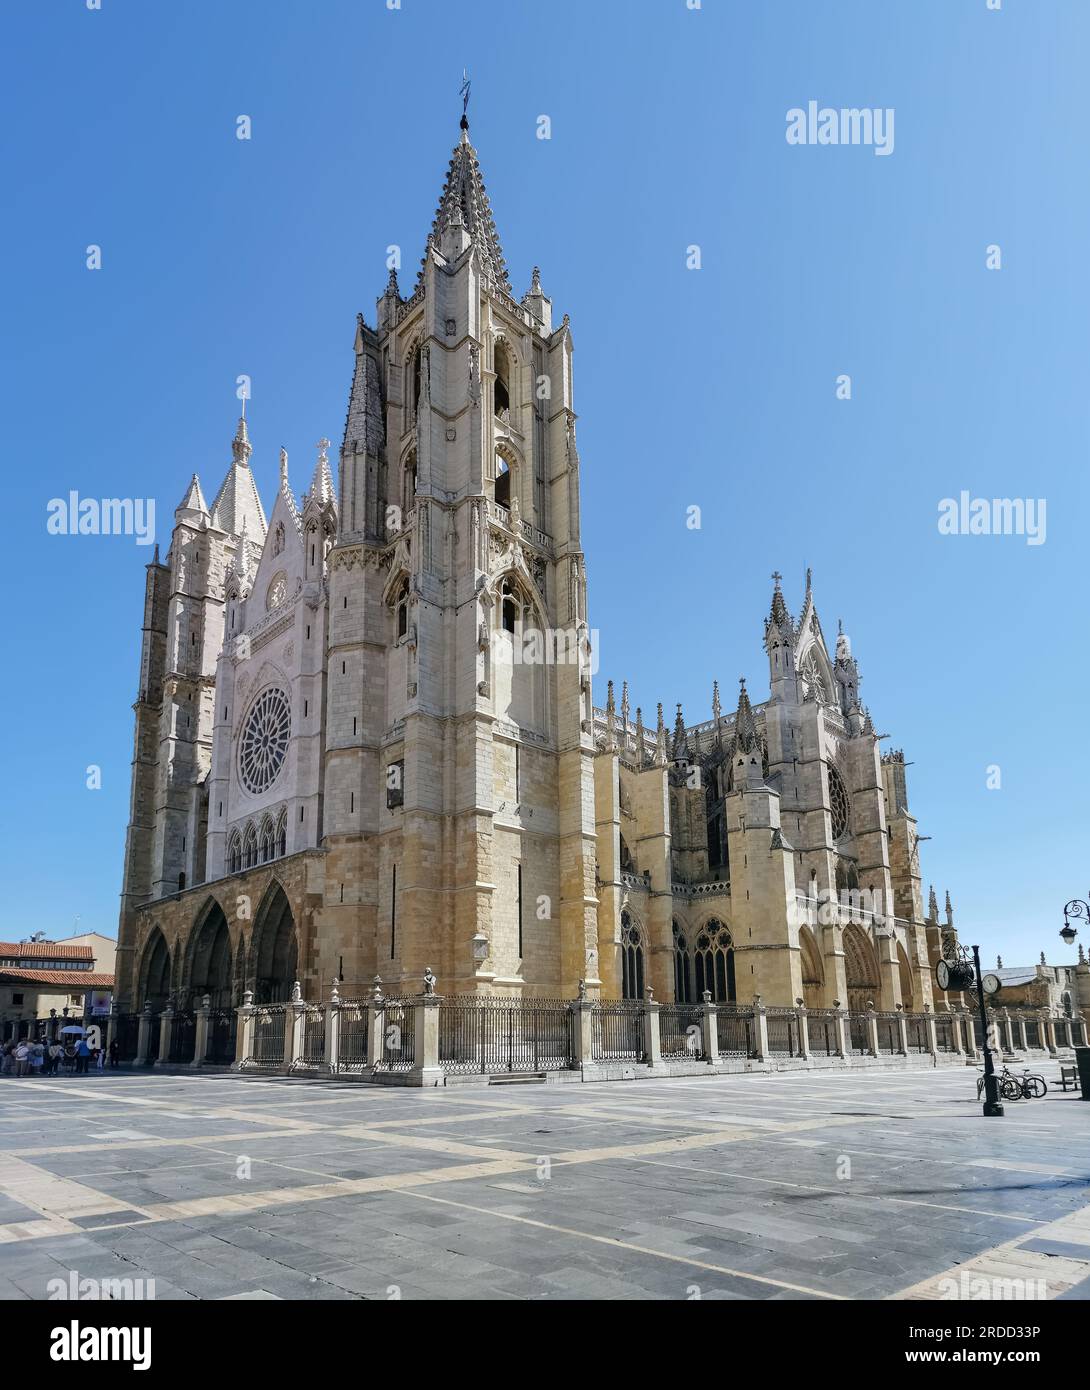 León Spagna - 07 04 2021: Vista principale della cattedrale di Santa María de Regla de León, iconica facciata gotica e romanica, situata in Plaza de Re Foto Stock